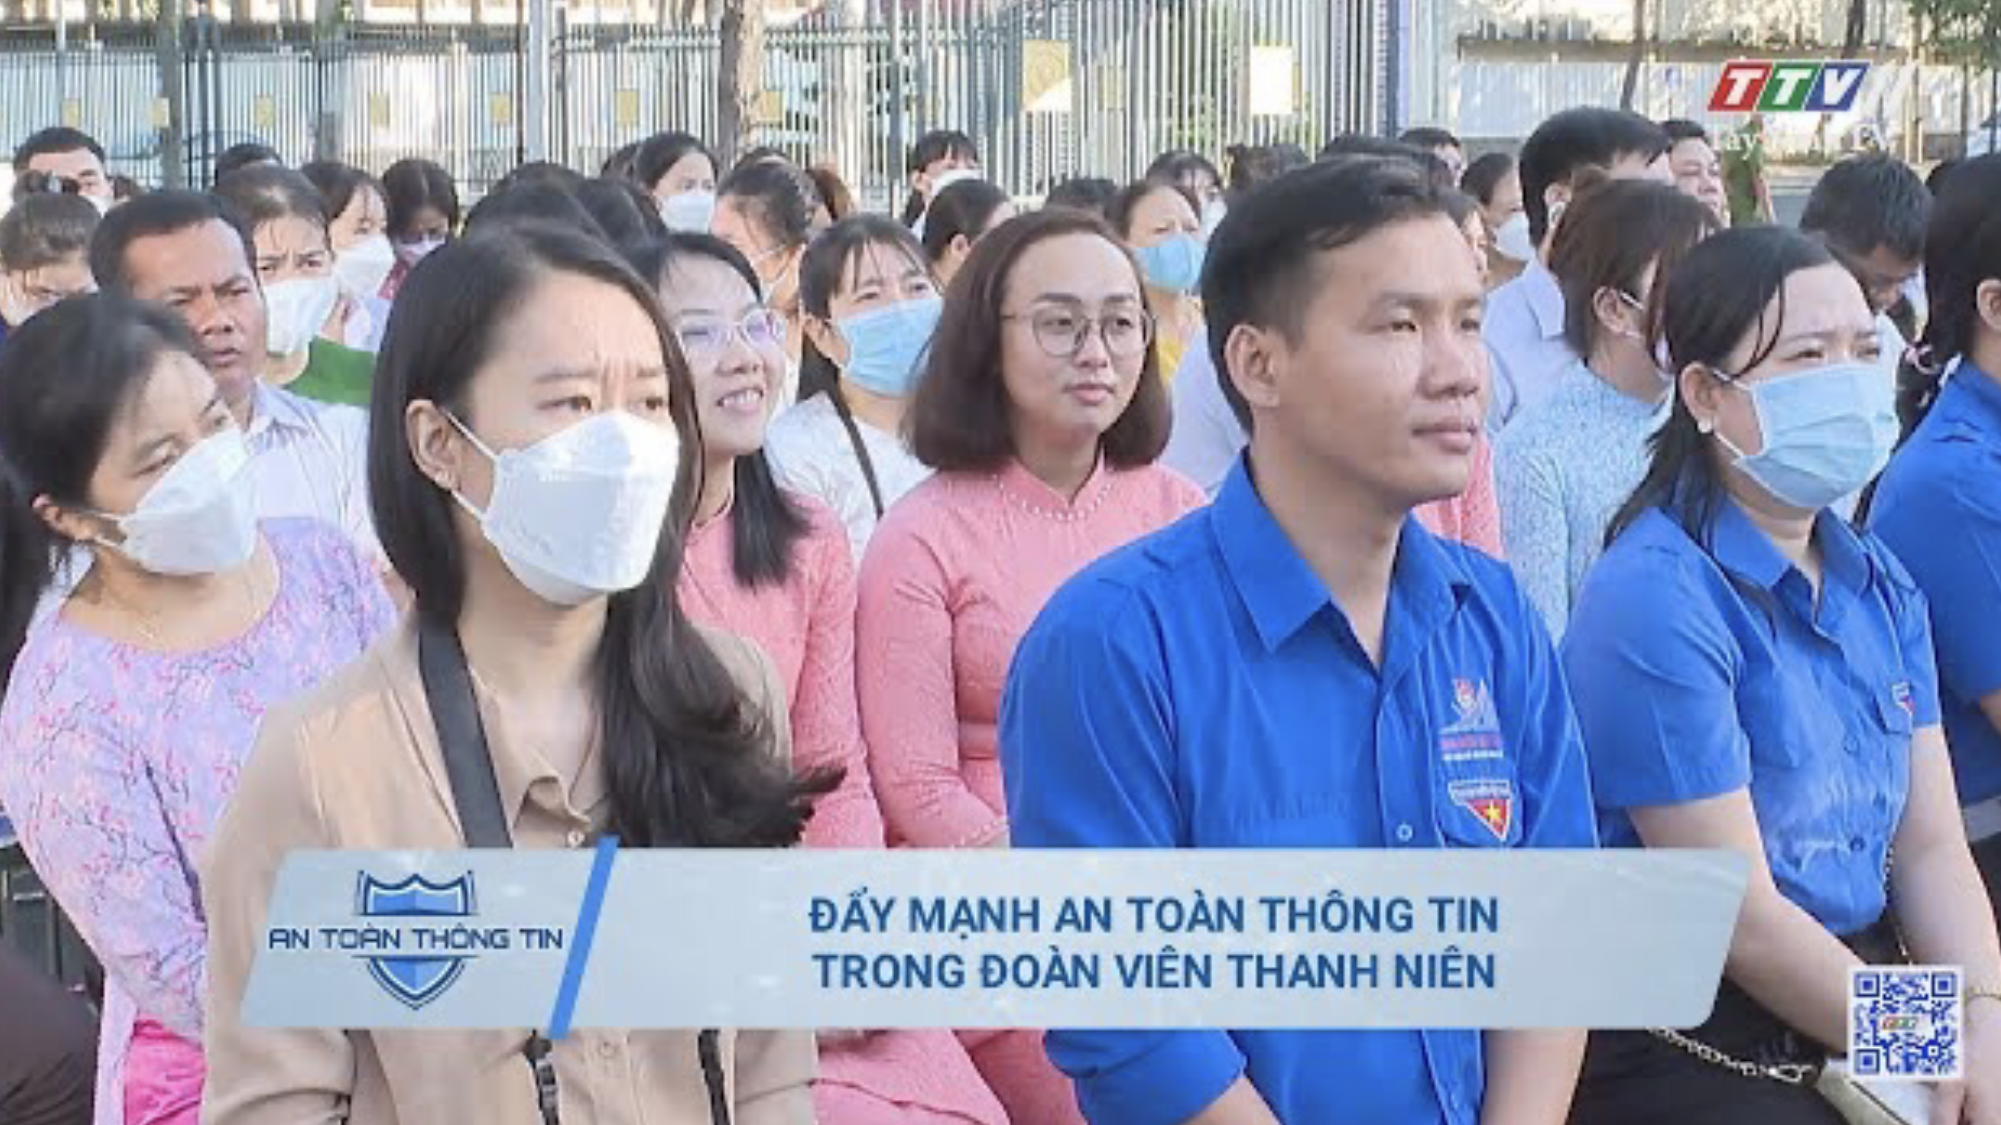 Đẩy mạnh an toàn thông tin trong công tác Đoàn viên thanh niên | AN TOÀN THÔNG TIN | TayNinhTV